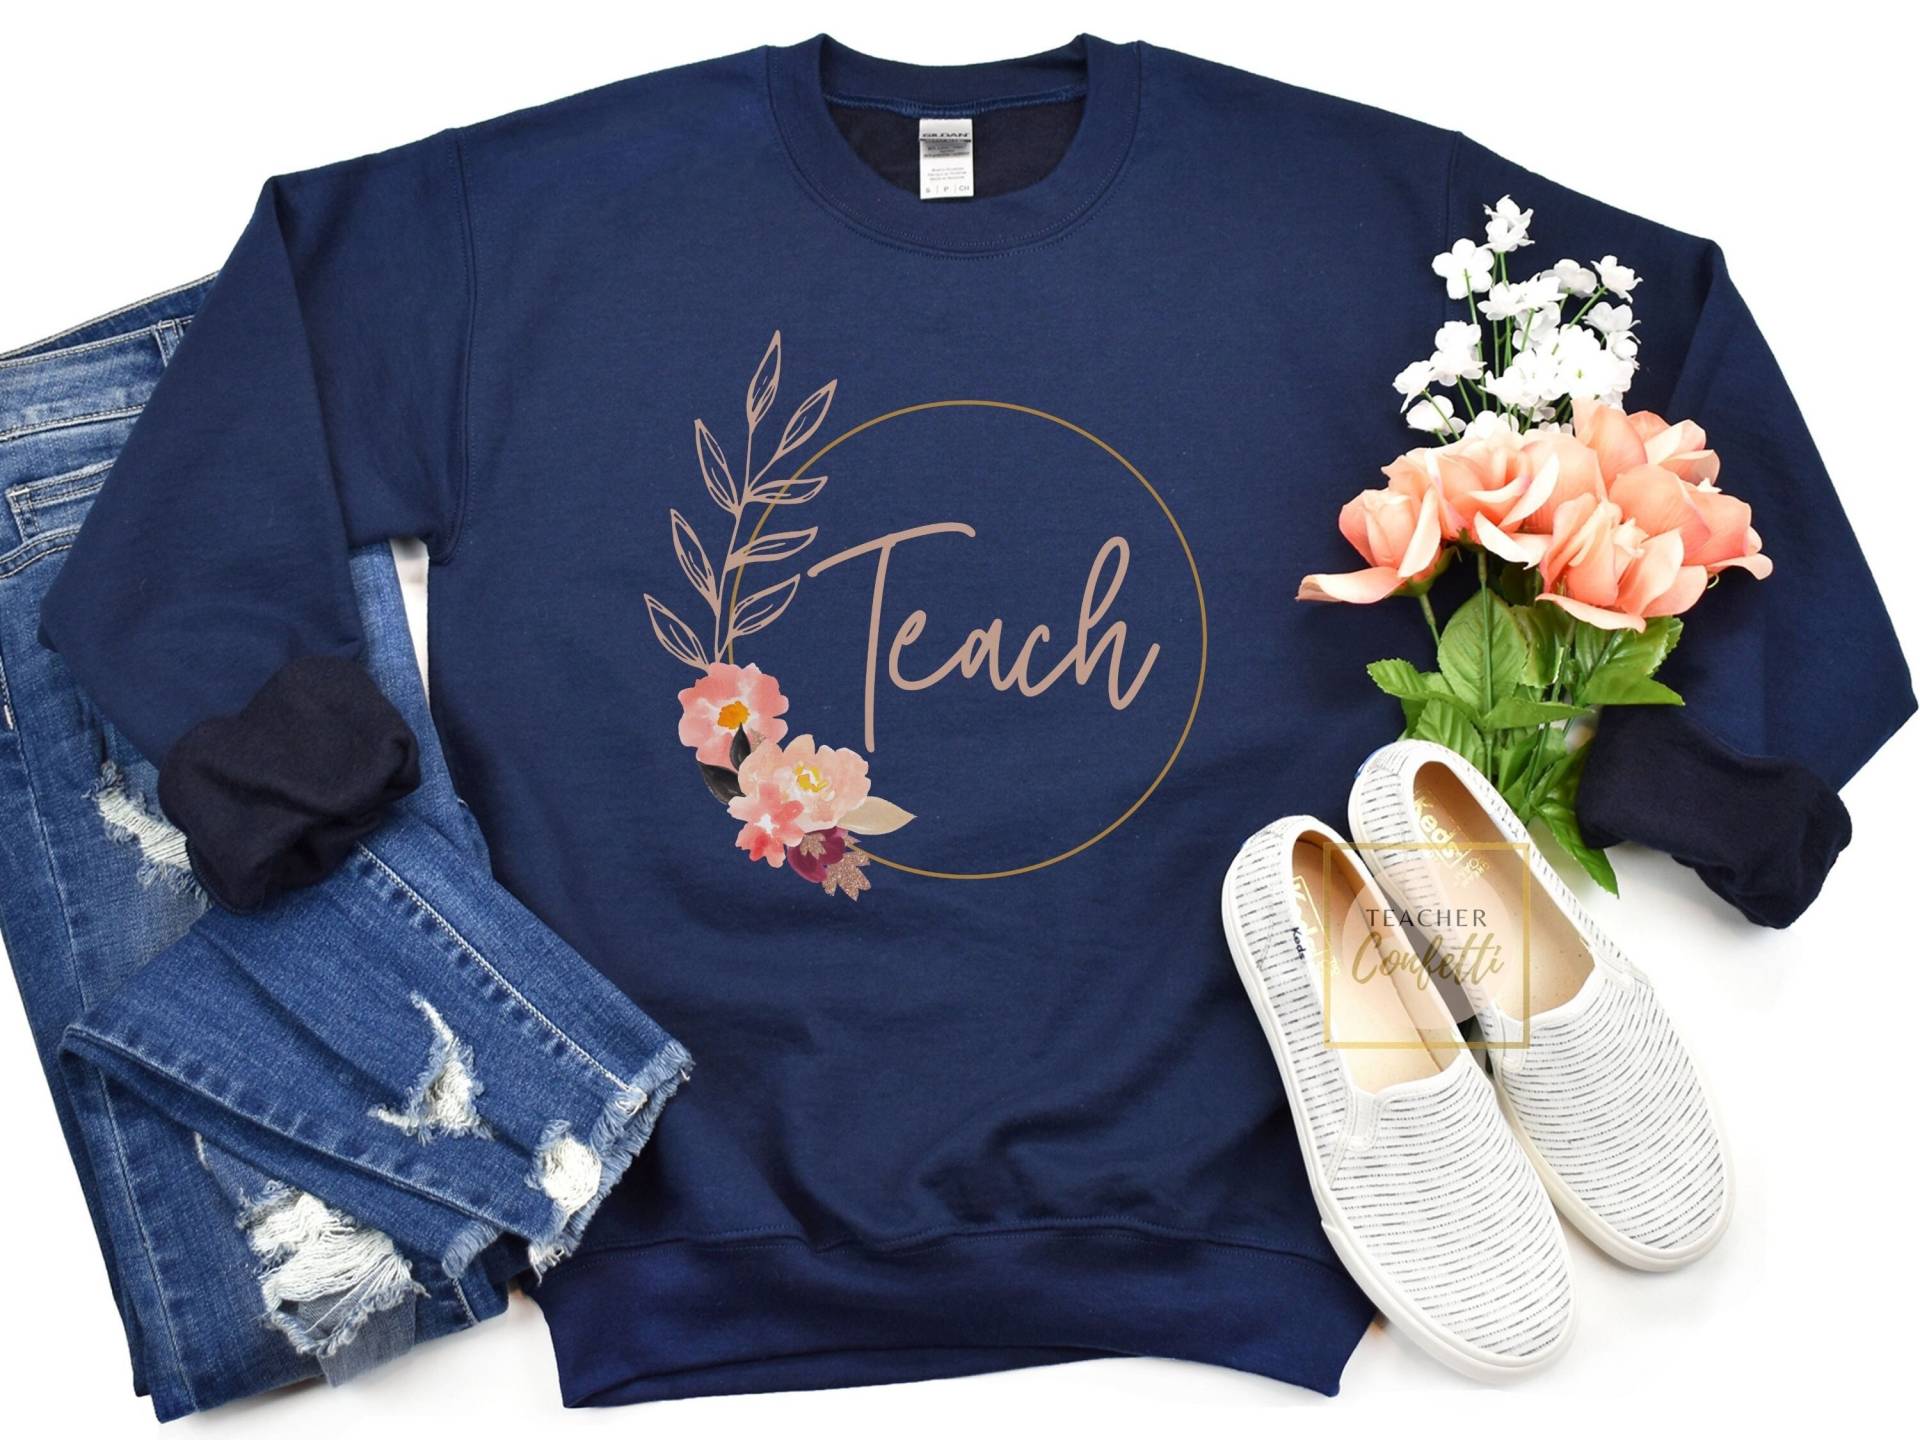 Teach Sweatshirt/Lehrer Süßes Pullover Rundhals Floral von TeacherConfetti